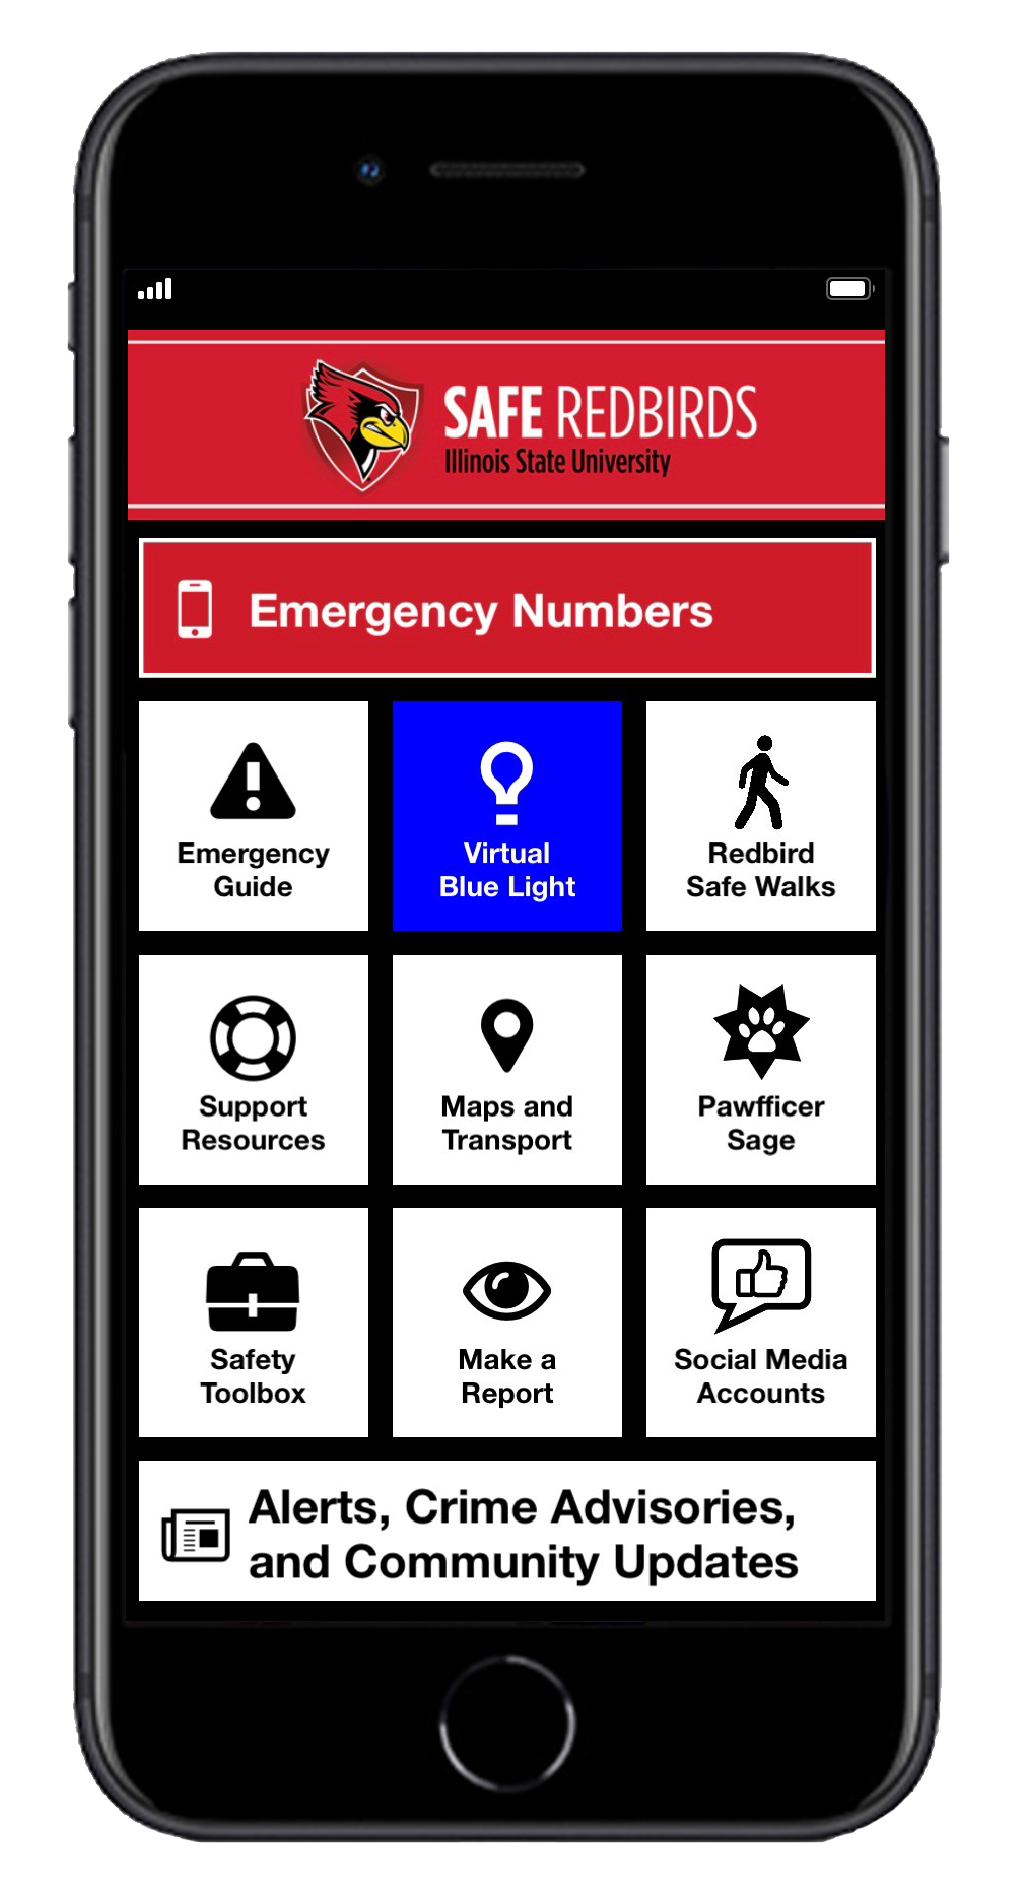 Image of the Safe Redbirds App